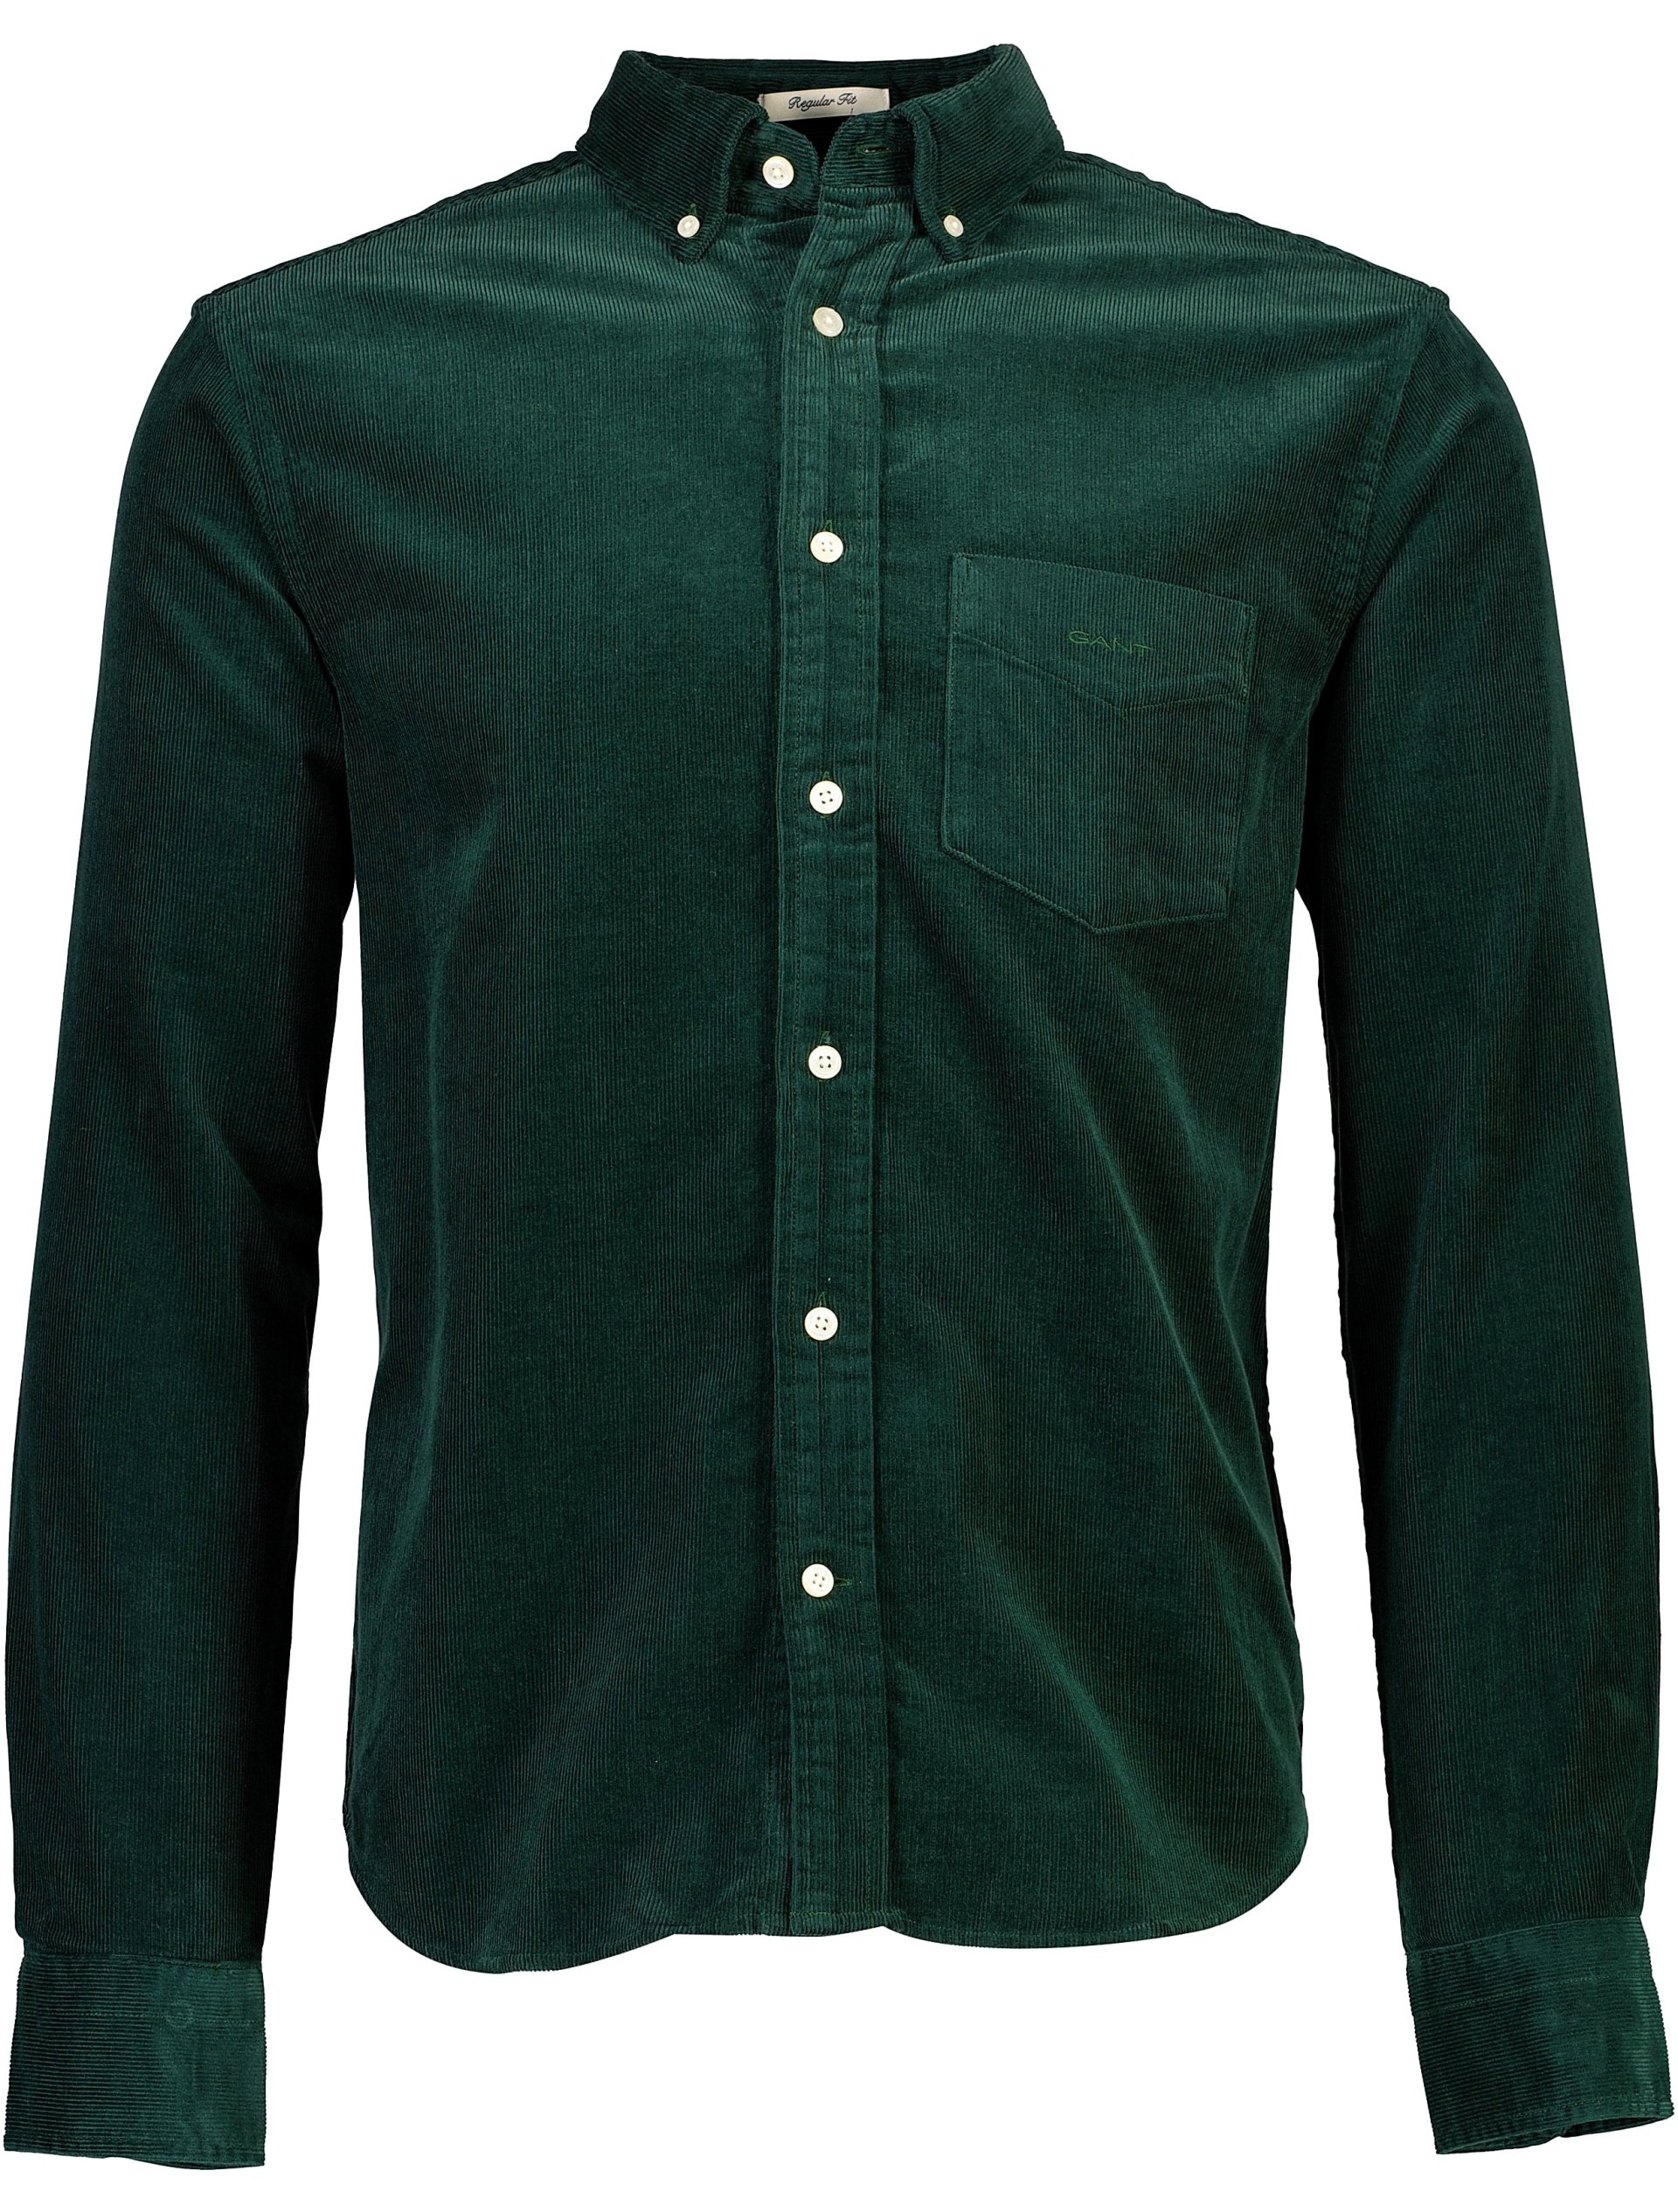 Gant Fløjlsskjorte grøn / 374 tartan green